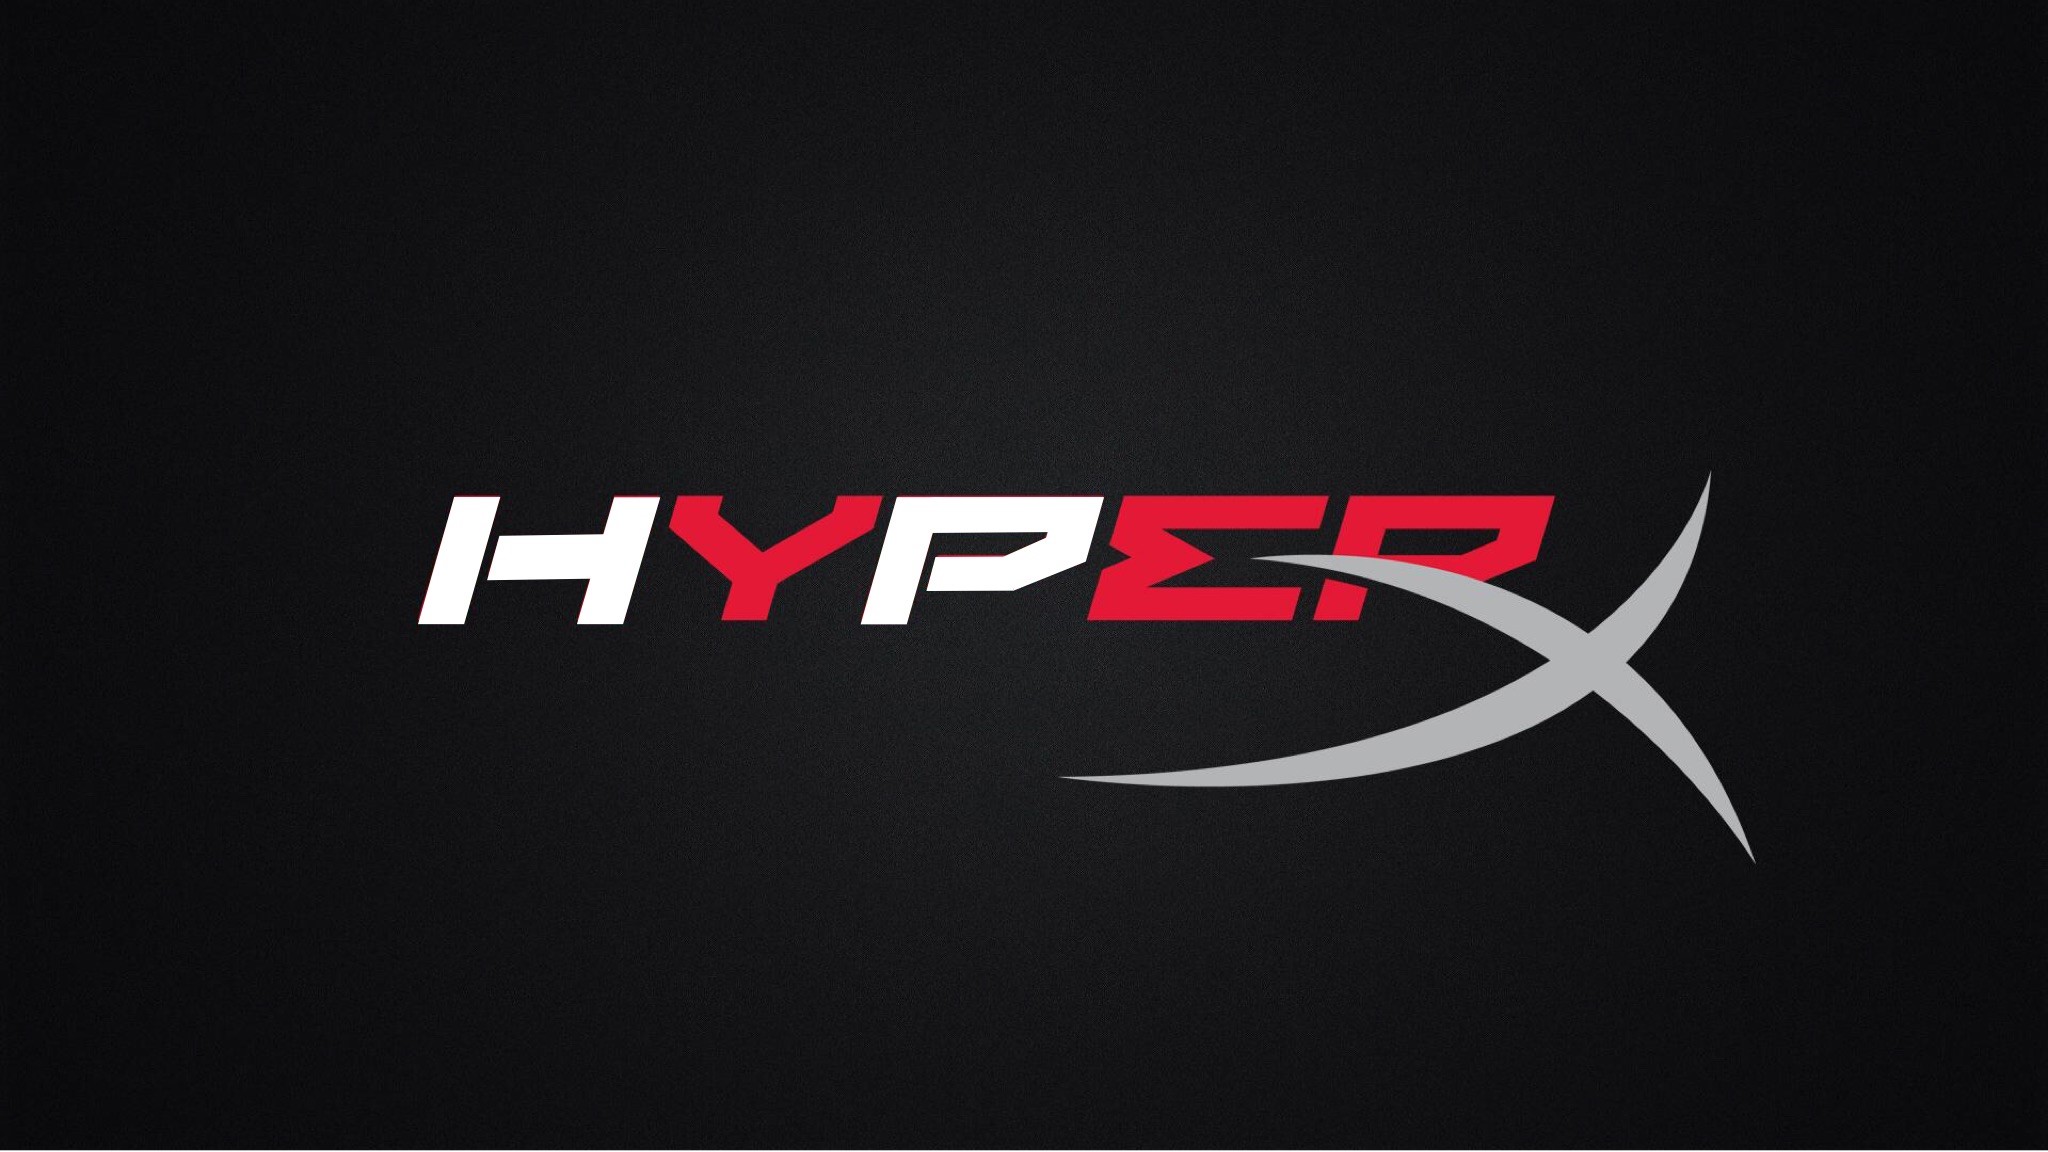 Hyperx. HYPERX эмблема. HYPERX надпись. Наклейка HYPERX. HYPERX картинки.